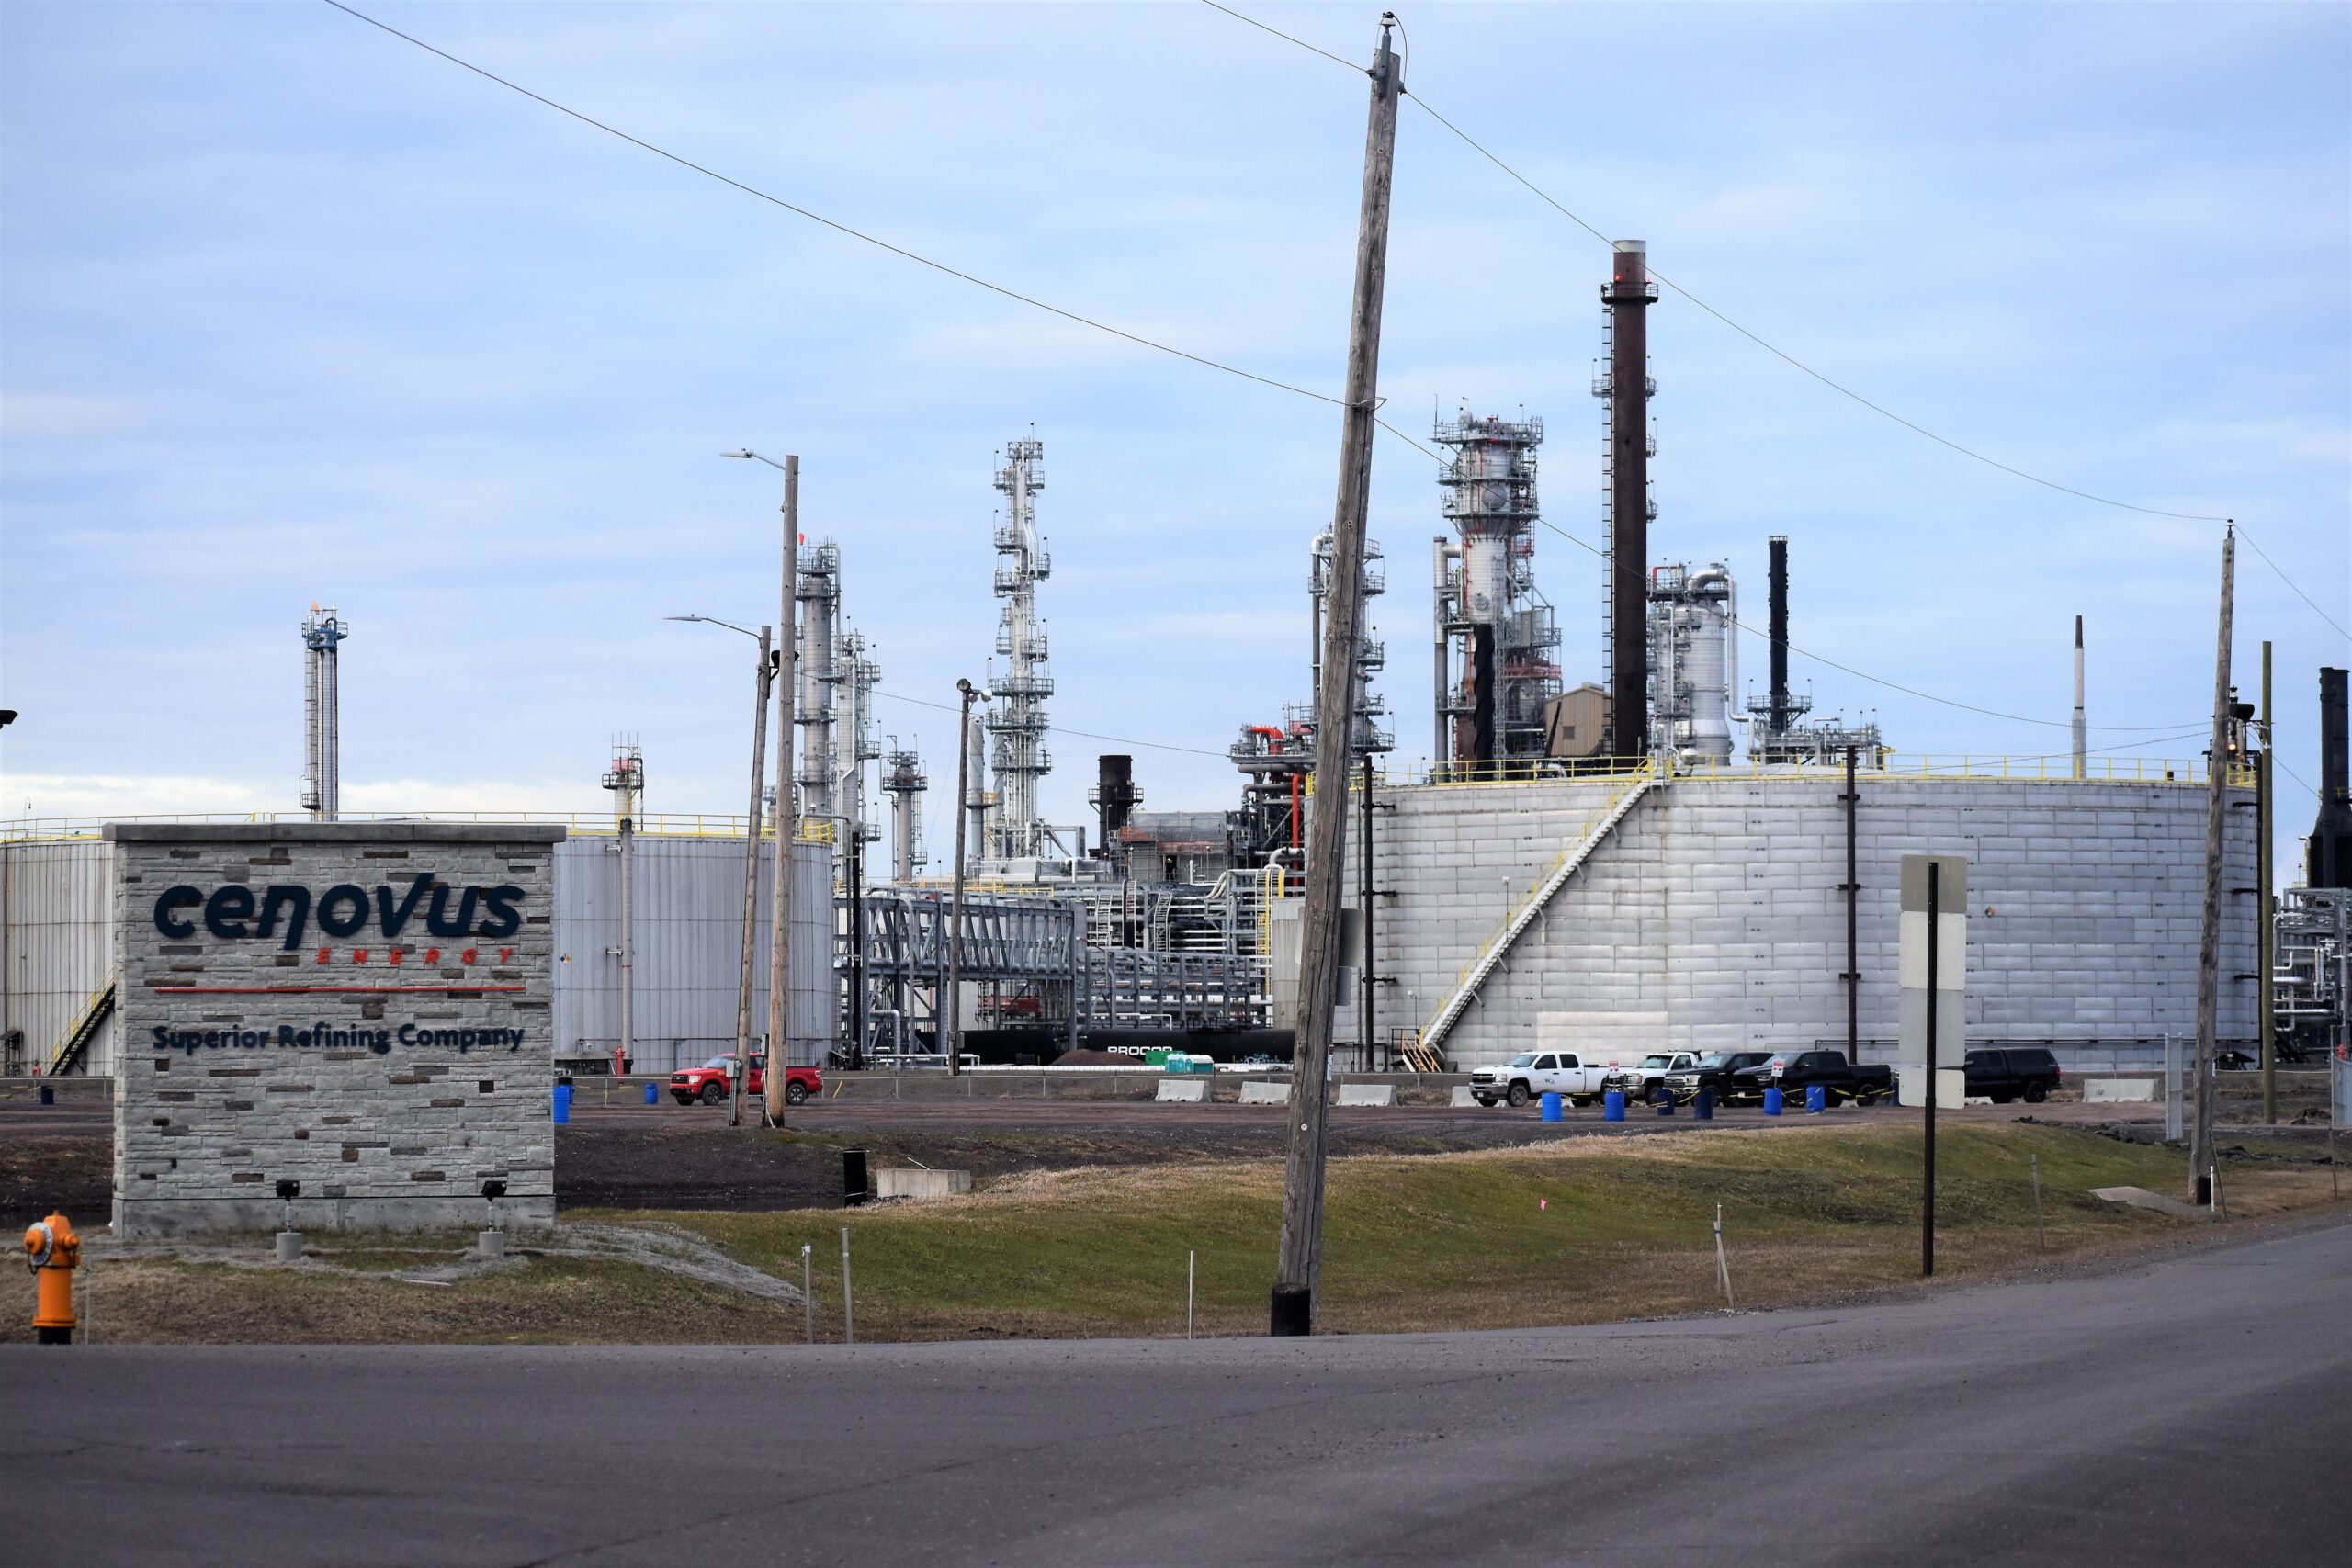 Superior refinery still hasn’t resumed full operations